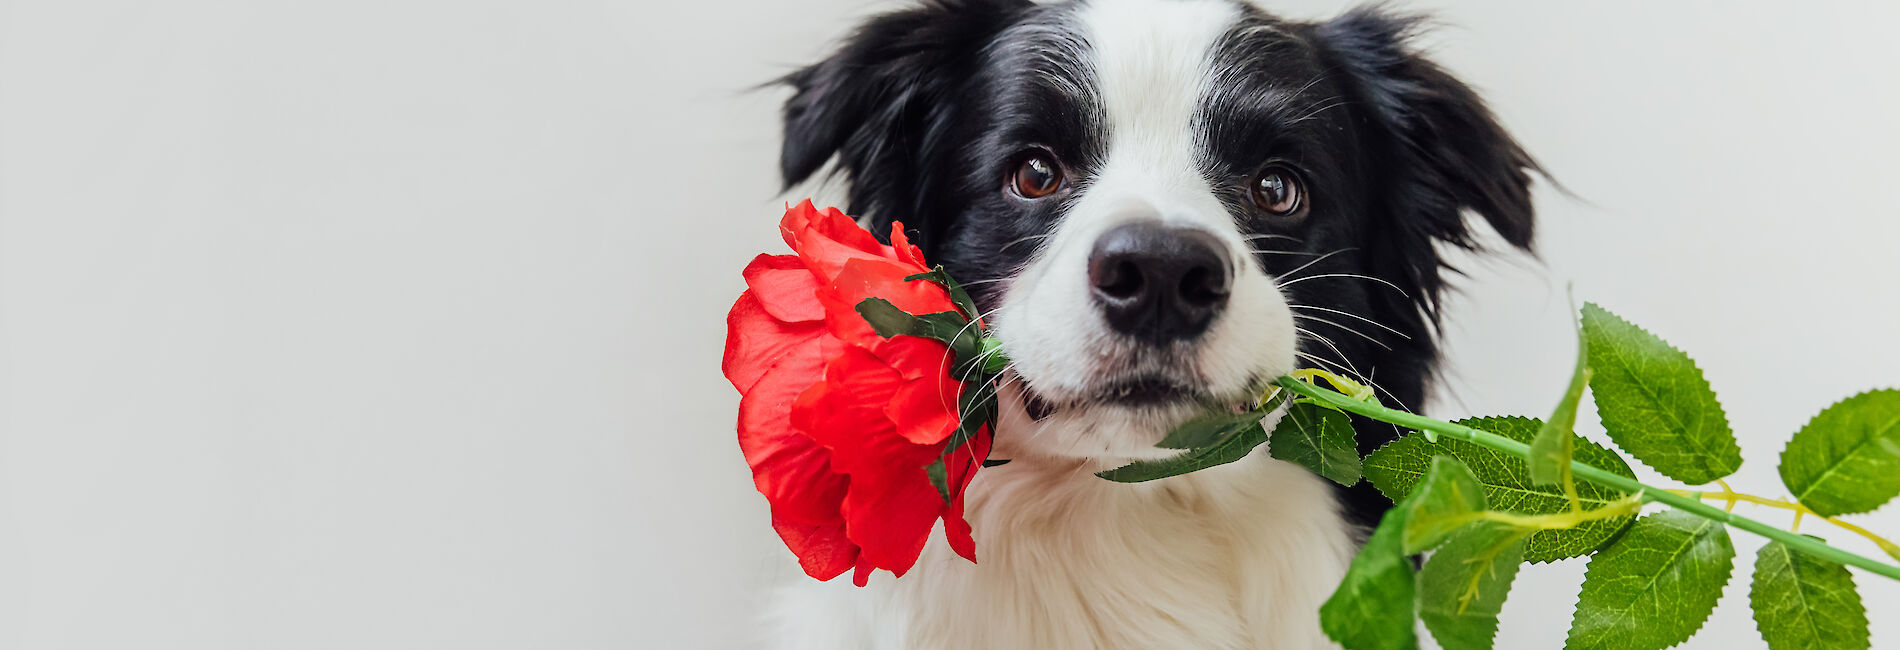 Hund mit roter Rose in der Schnauze